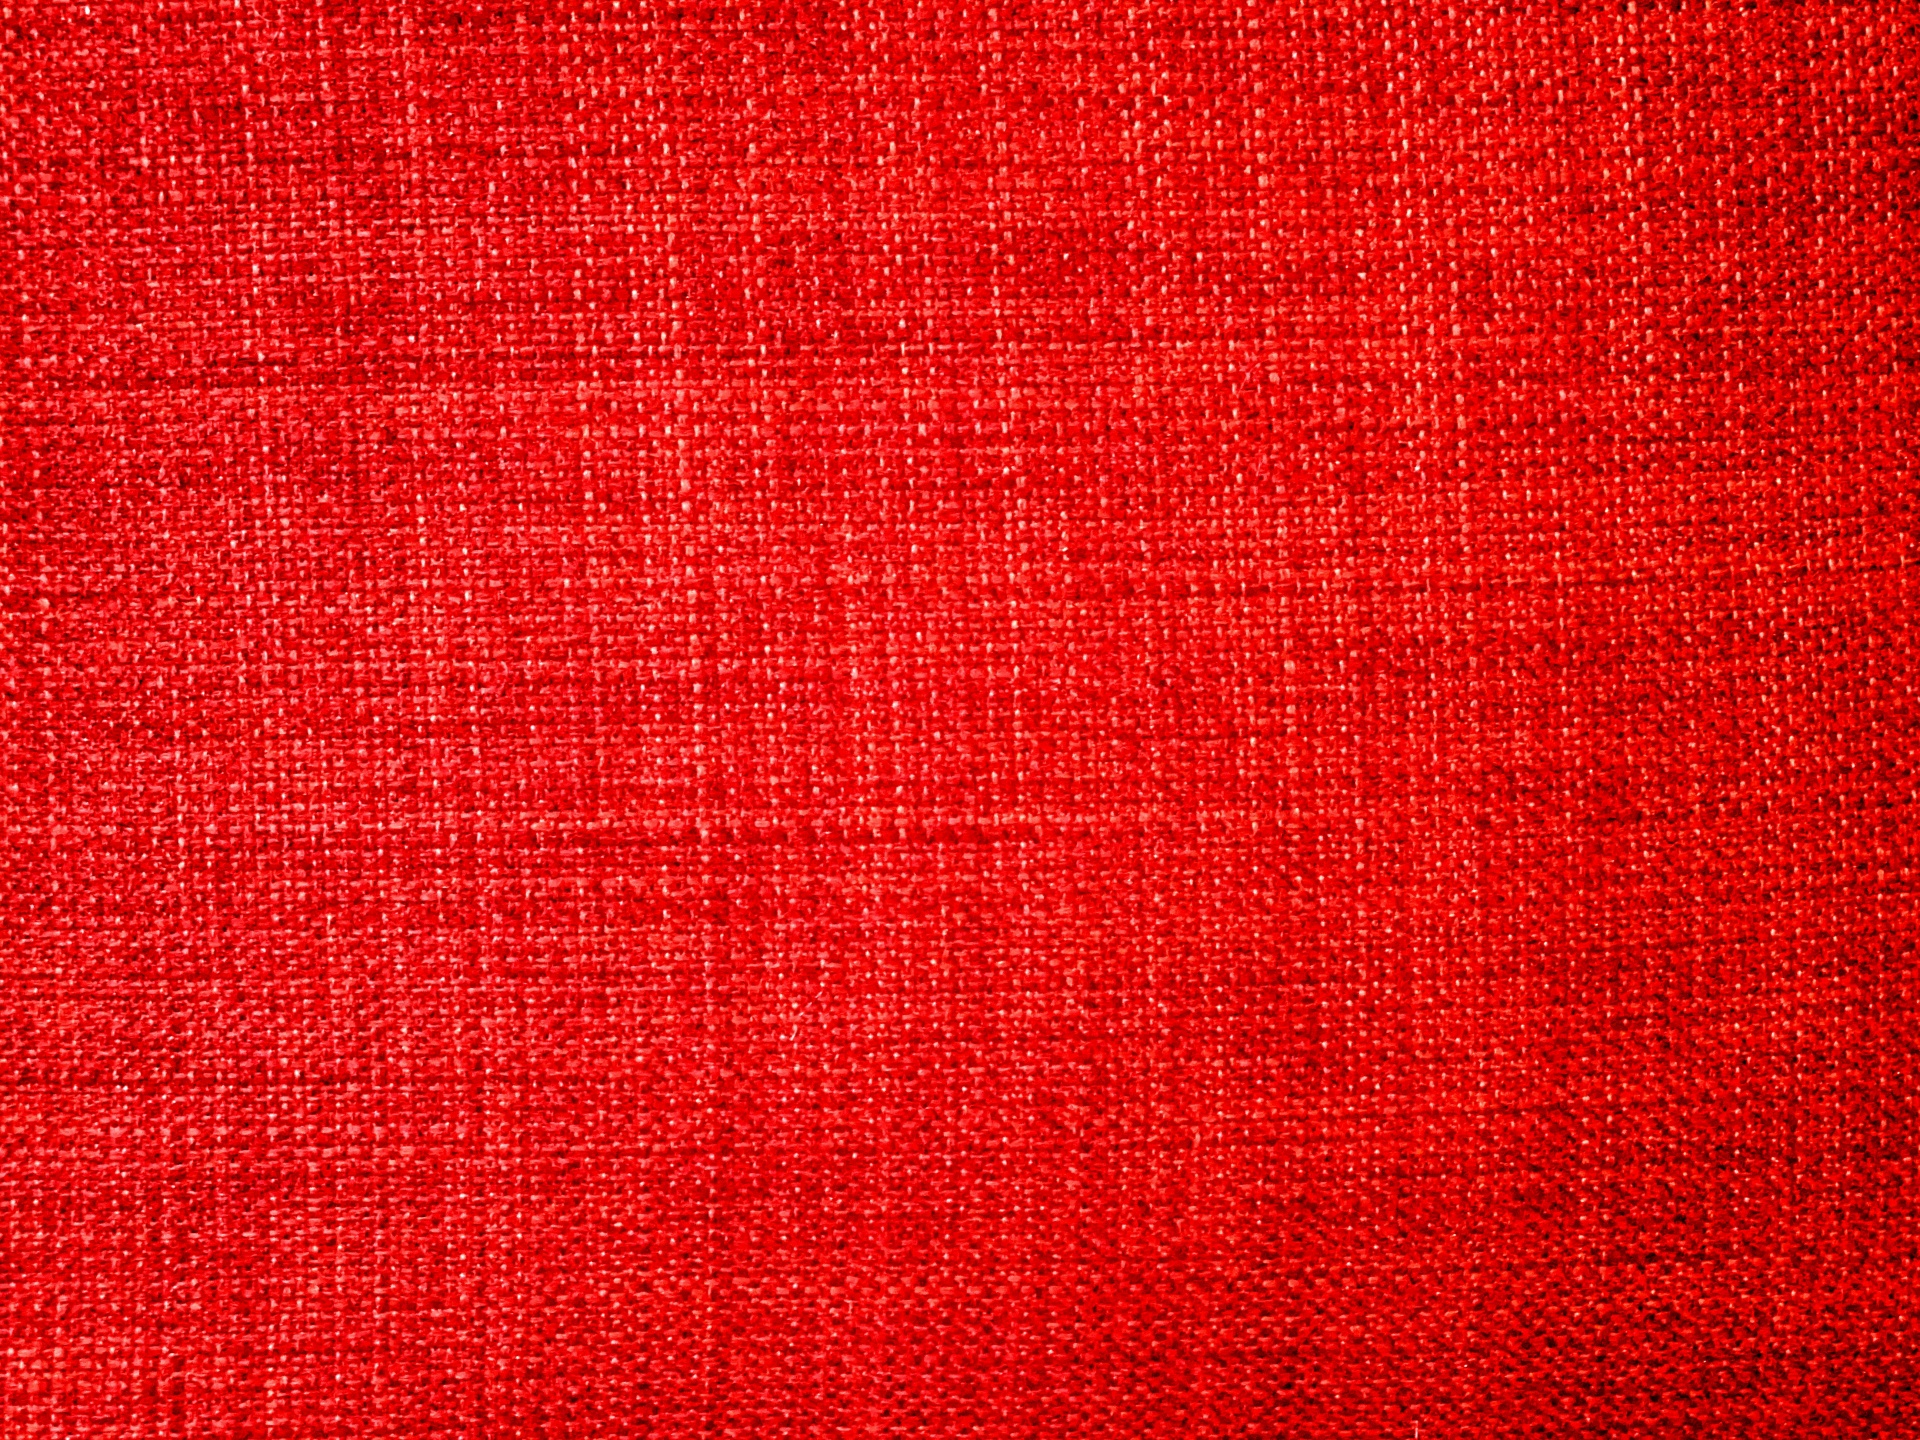 Red Fabric teksturowana Kontekst